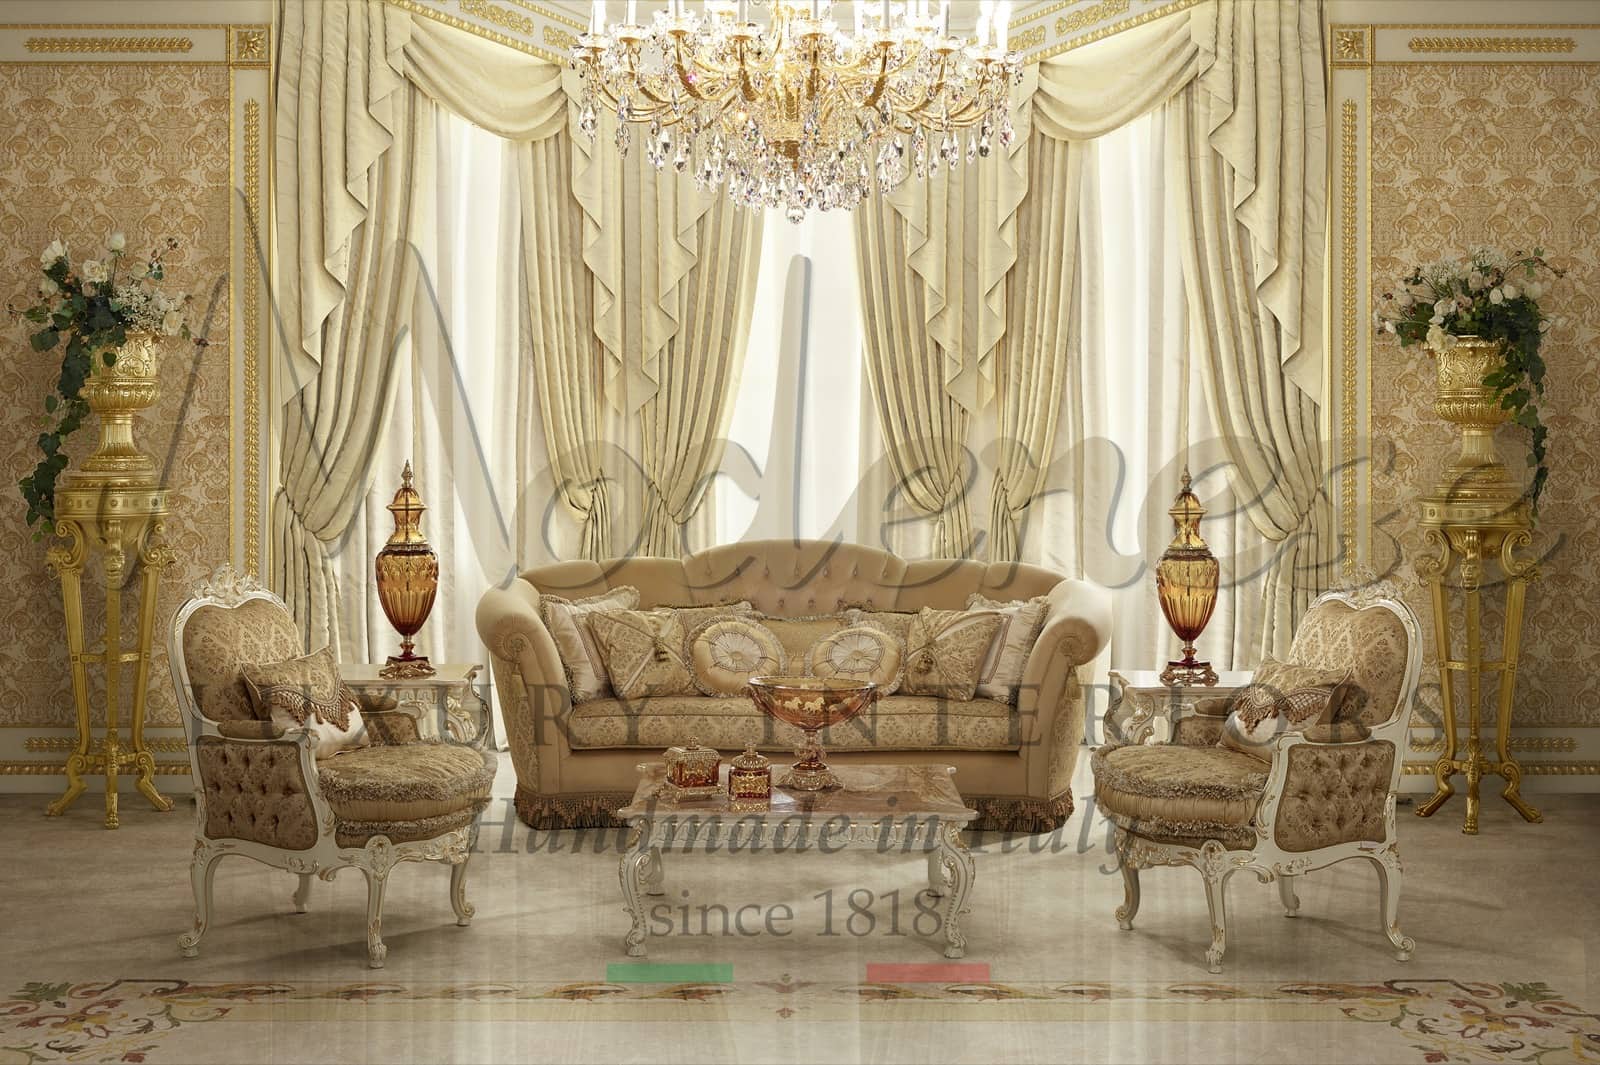 meubles de luxe classiques salon décoration de la maison empire baroque finition laquée sur mesure villa royale palais projets résidentiels canapé rideaux de fauteuil de style chic meilleurs matériaux tissus de qualité supérieure